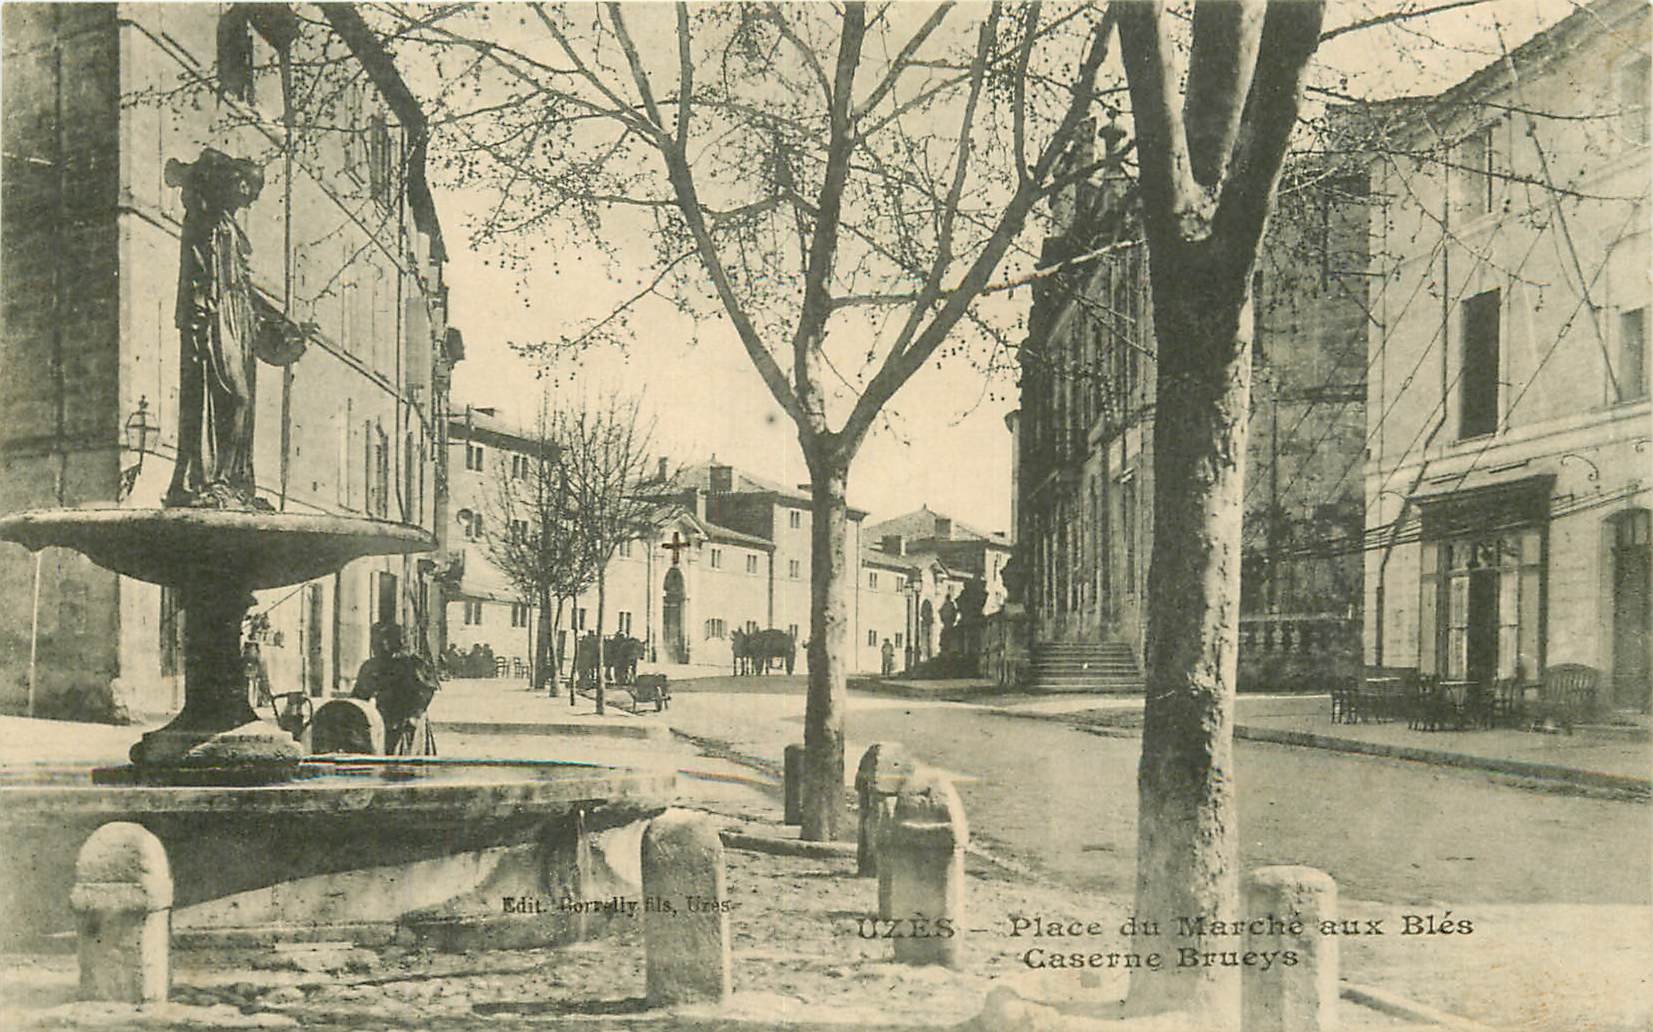 30 UZES. Caserne Brueys Place du Marché aux Blés 1915